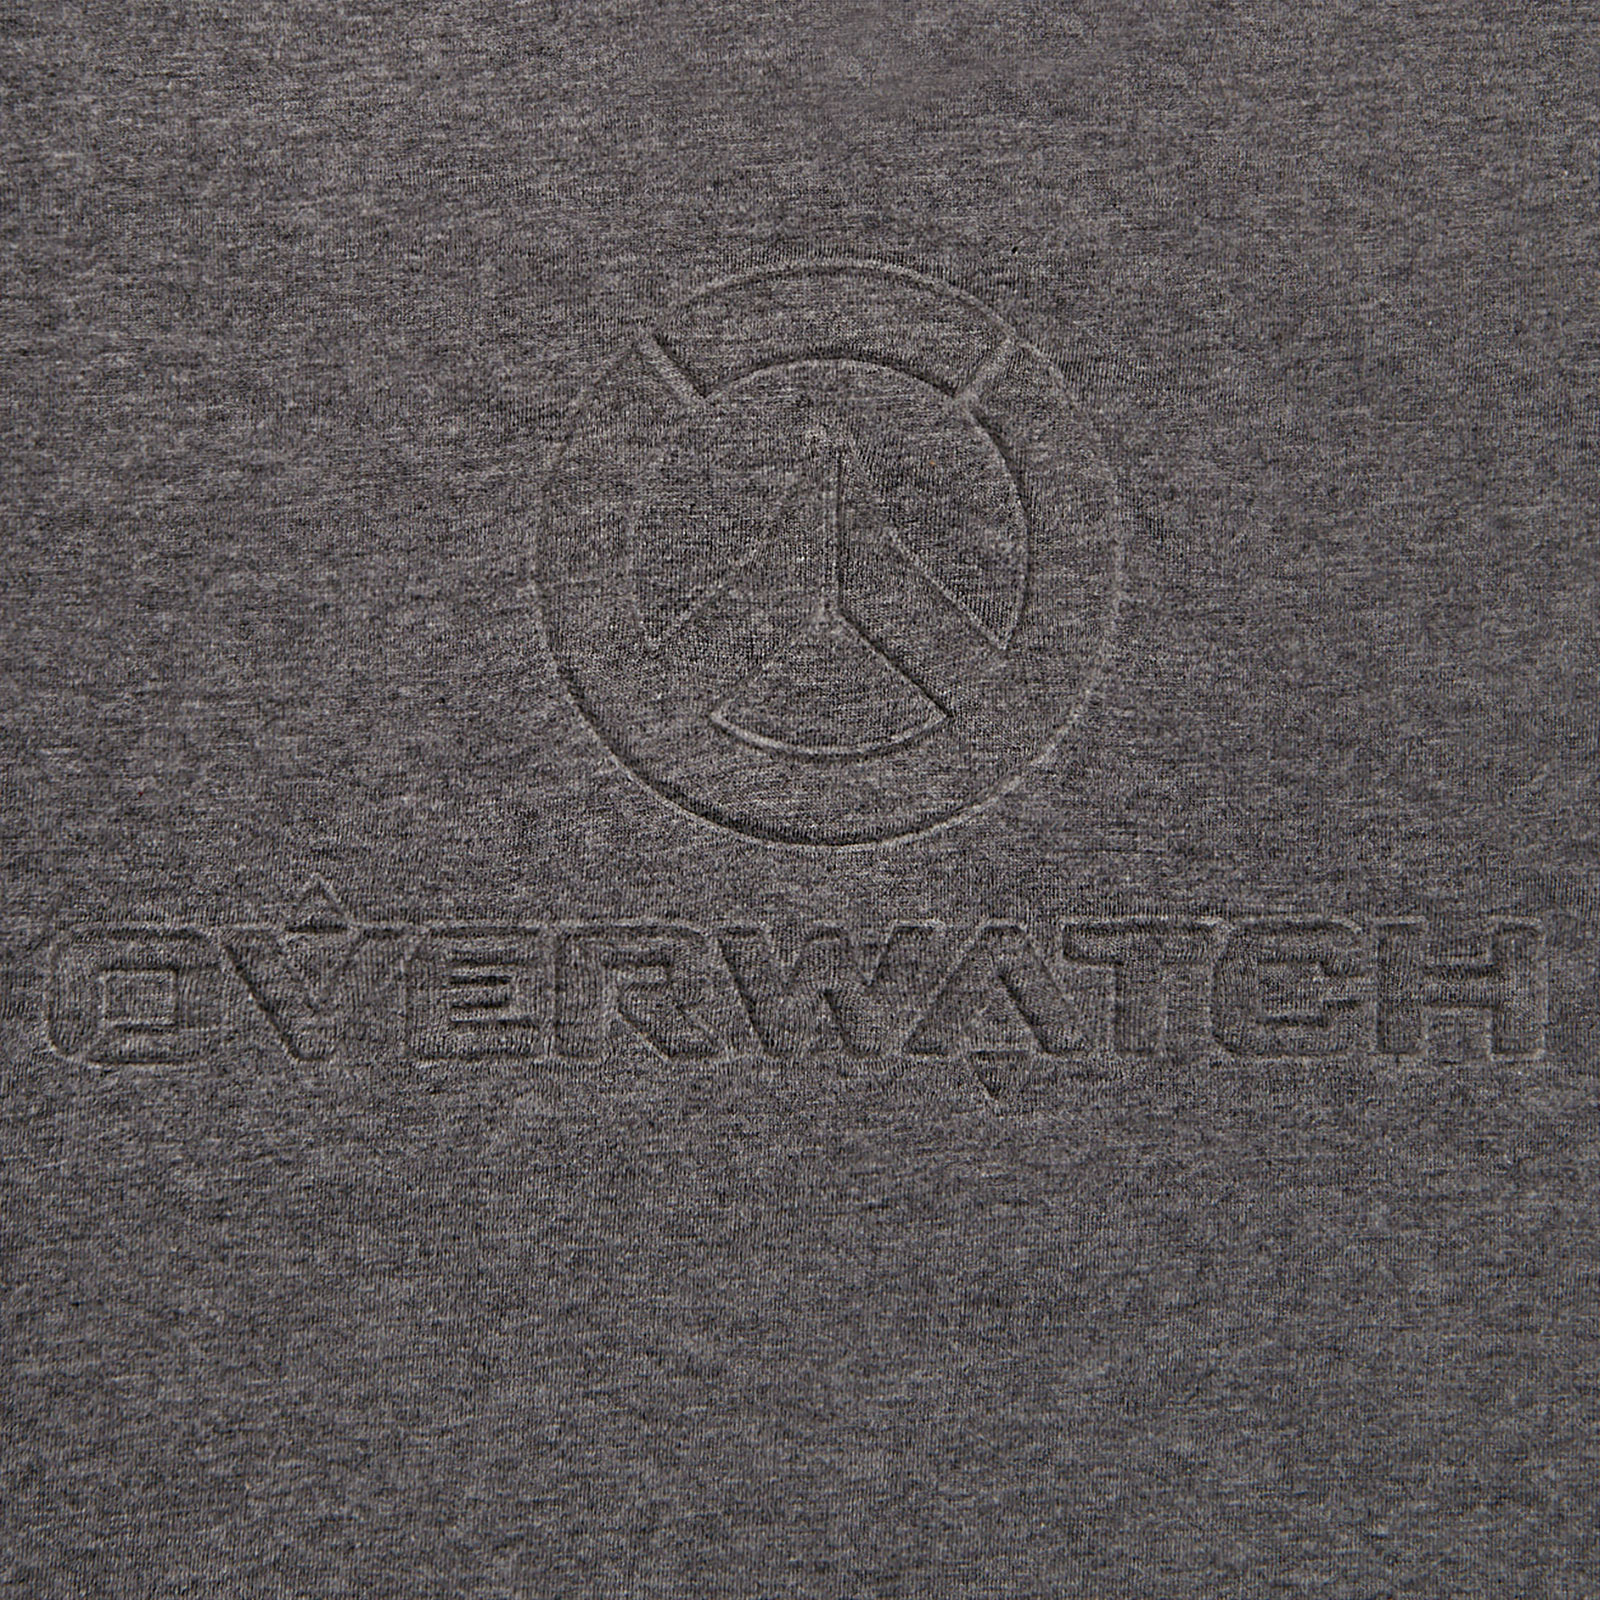 Overwatch - T-shirt logo 3D gris